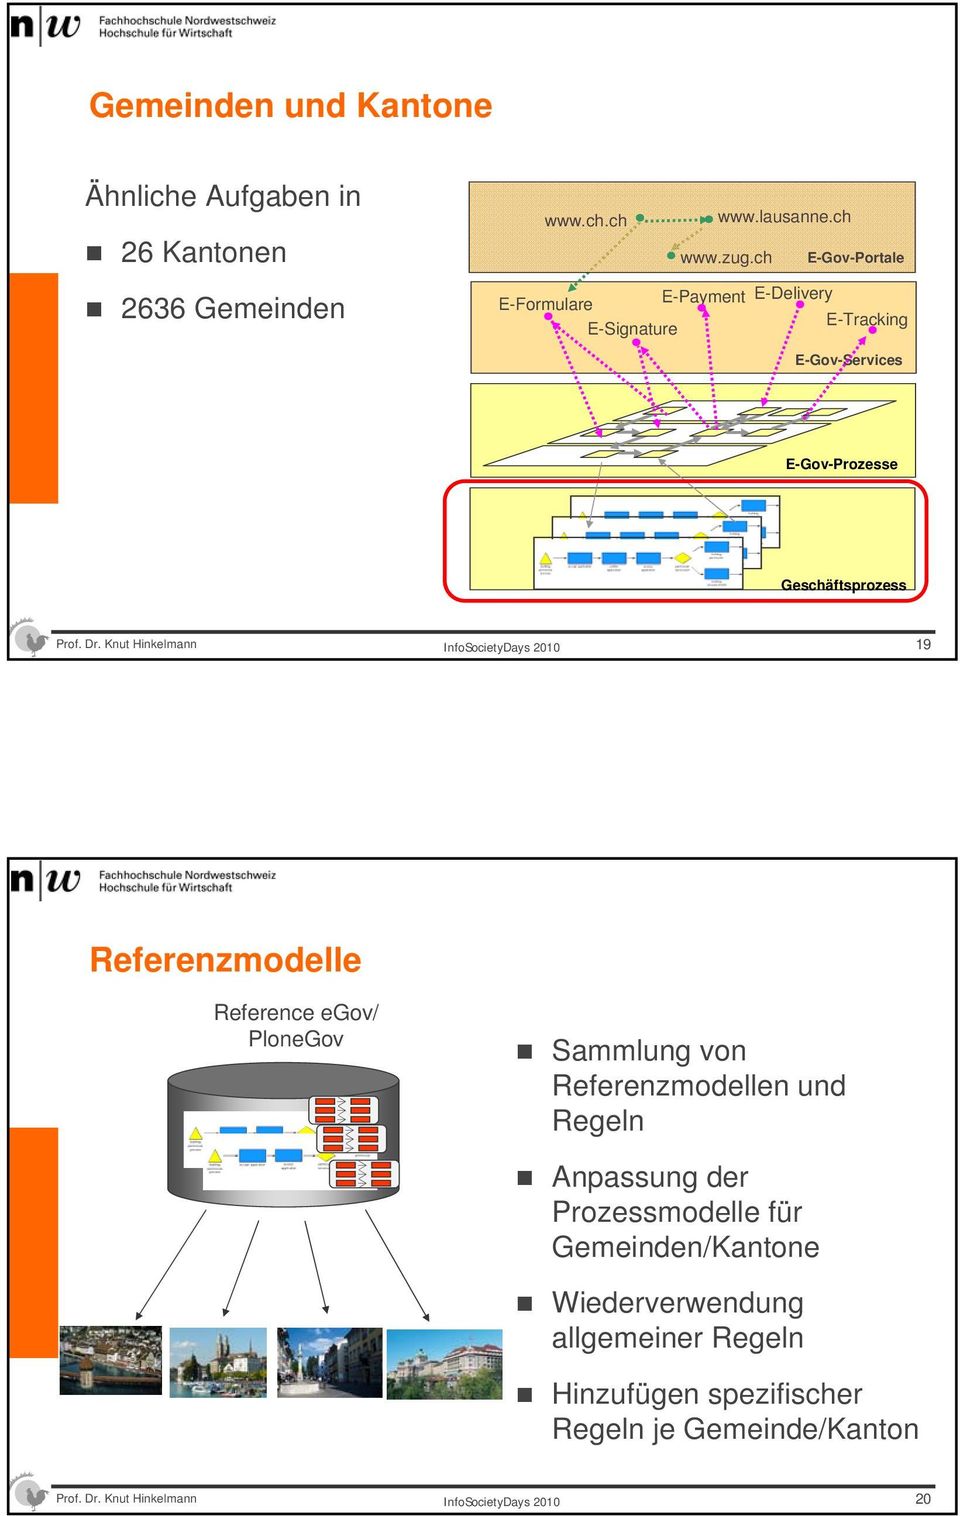 Dr. Knut Hinkelmann 19 Referenzmodelle Reference egov/ PloneGov Sammlung von Referenzmodellen und Regeln Anpassung der